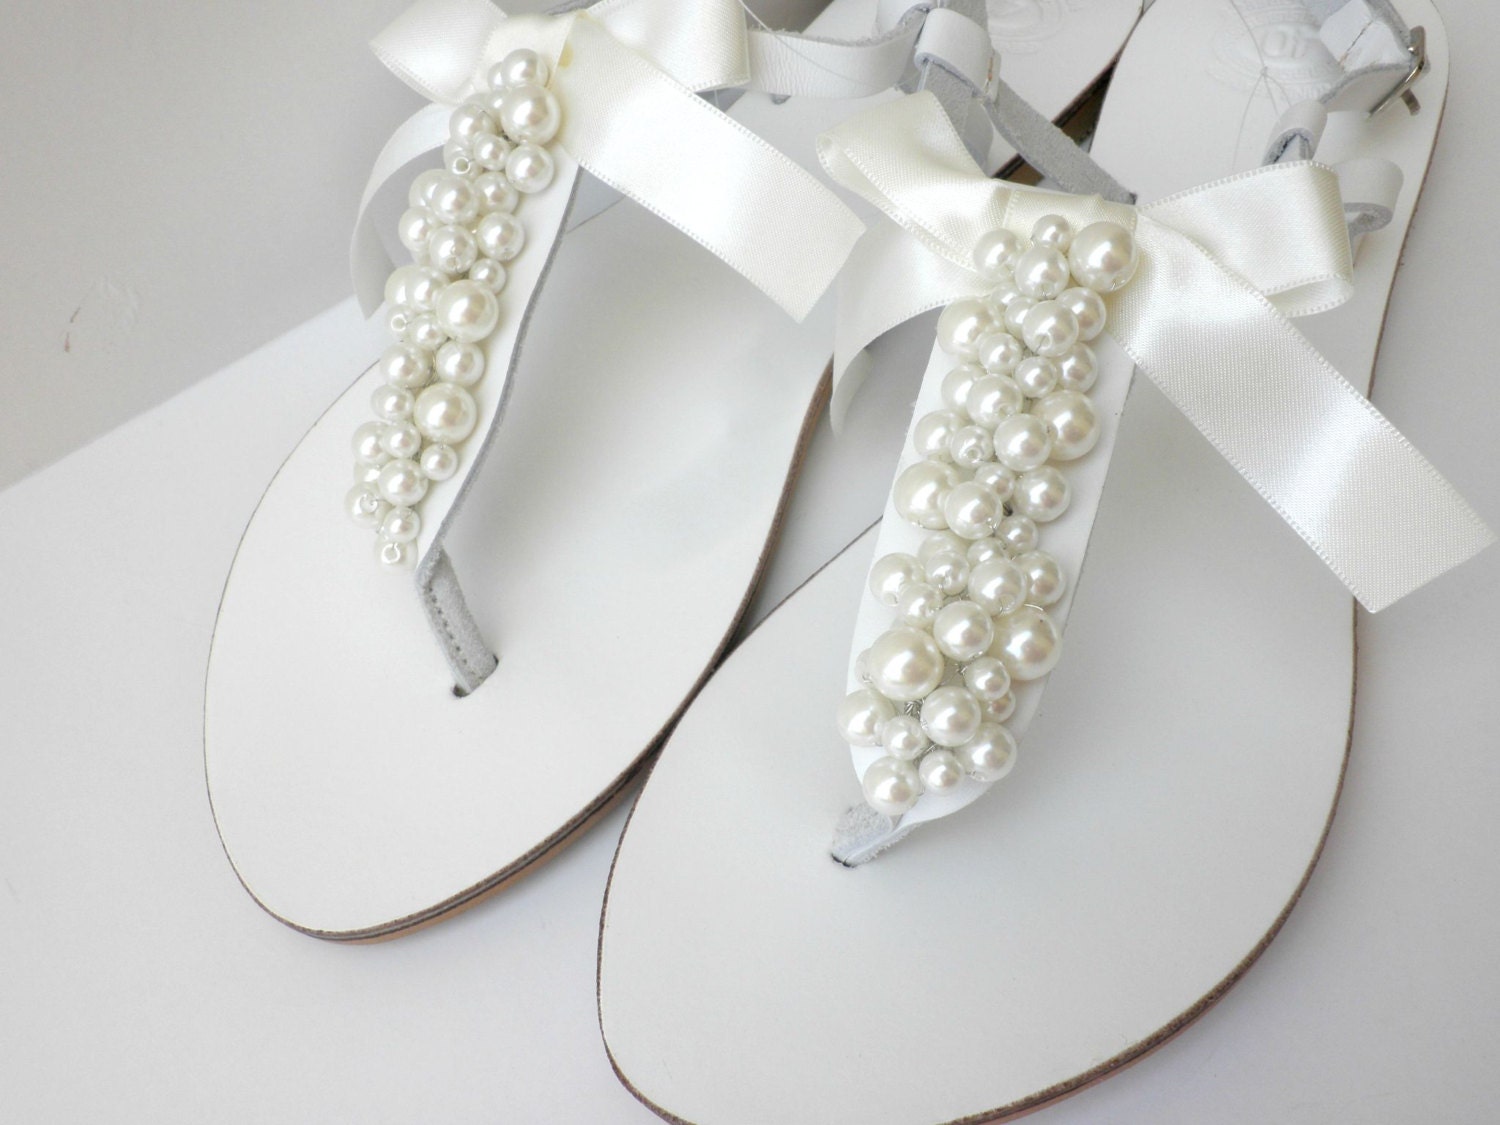 Witte Griekse sandalen met ivoren parels Bruiloft witte sandalen met ivoren parels en satijnen strik Schoenen damesschoenen Sandalen T-strap sandalen Bruids witte flats / Bruidsmeisje schoenen 